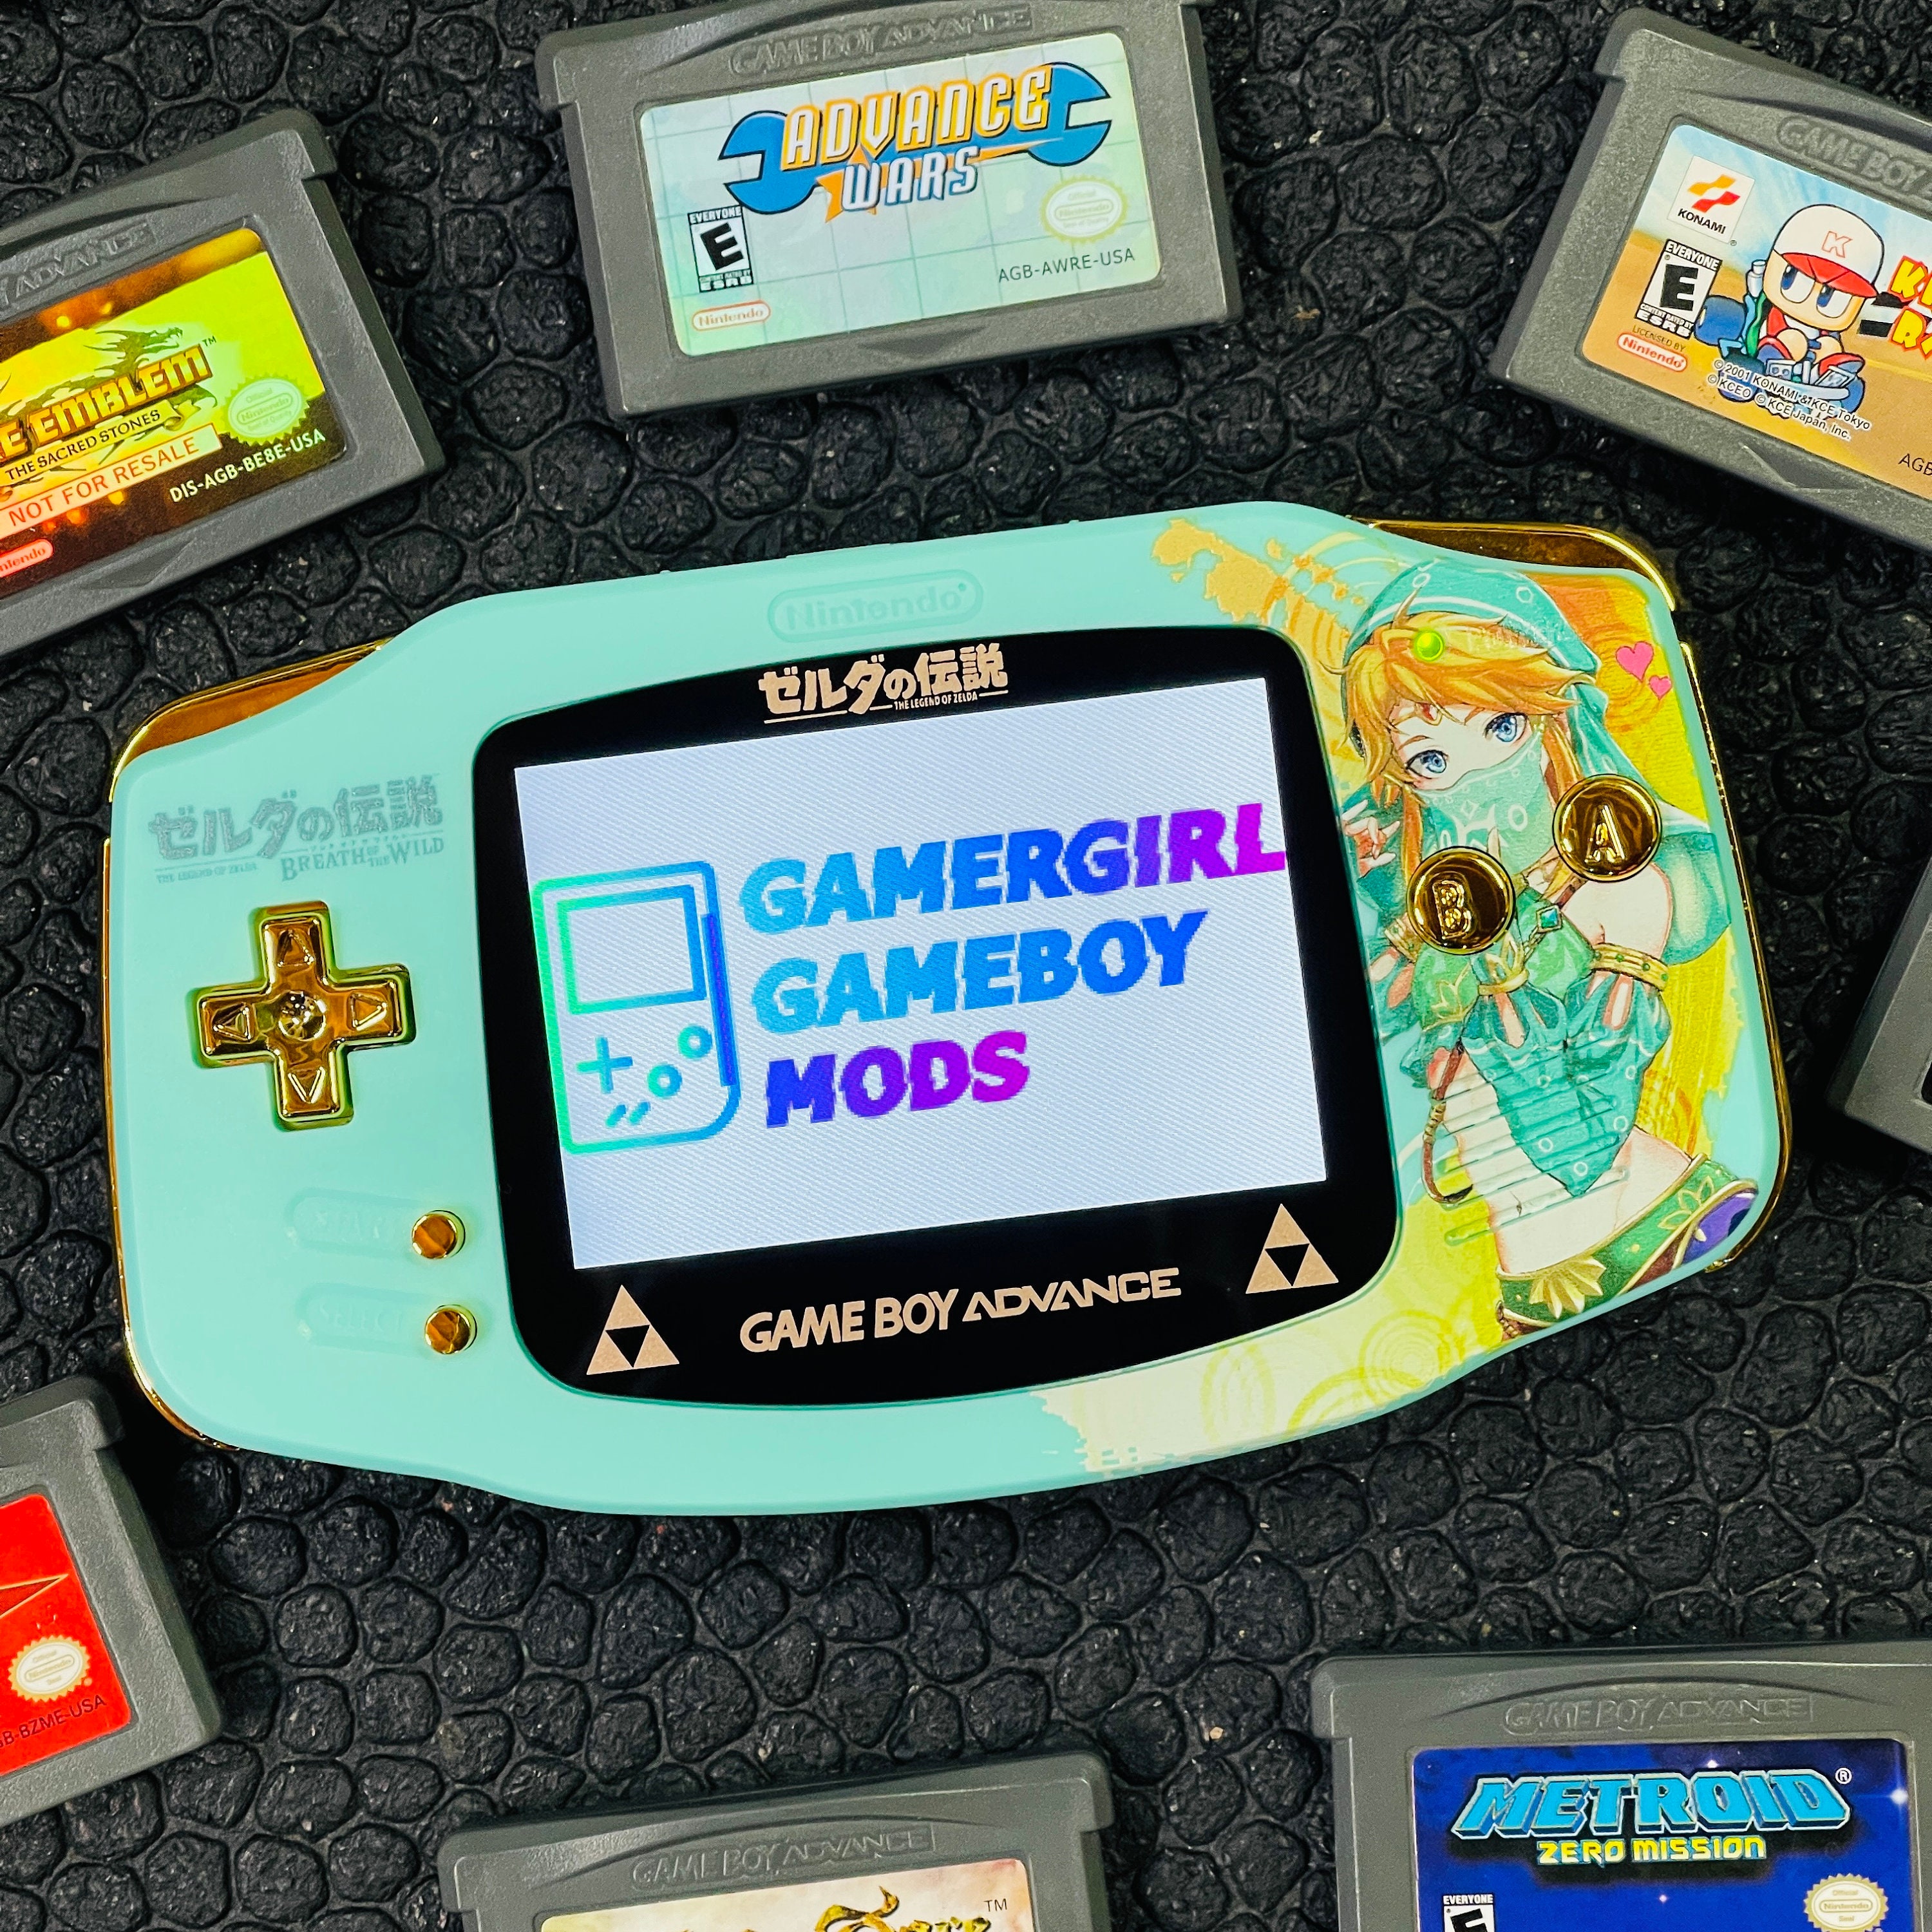 Coque de couleur Mega man GameBoy imprimée Uv personnalisée 